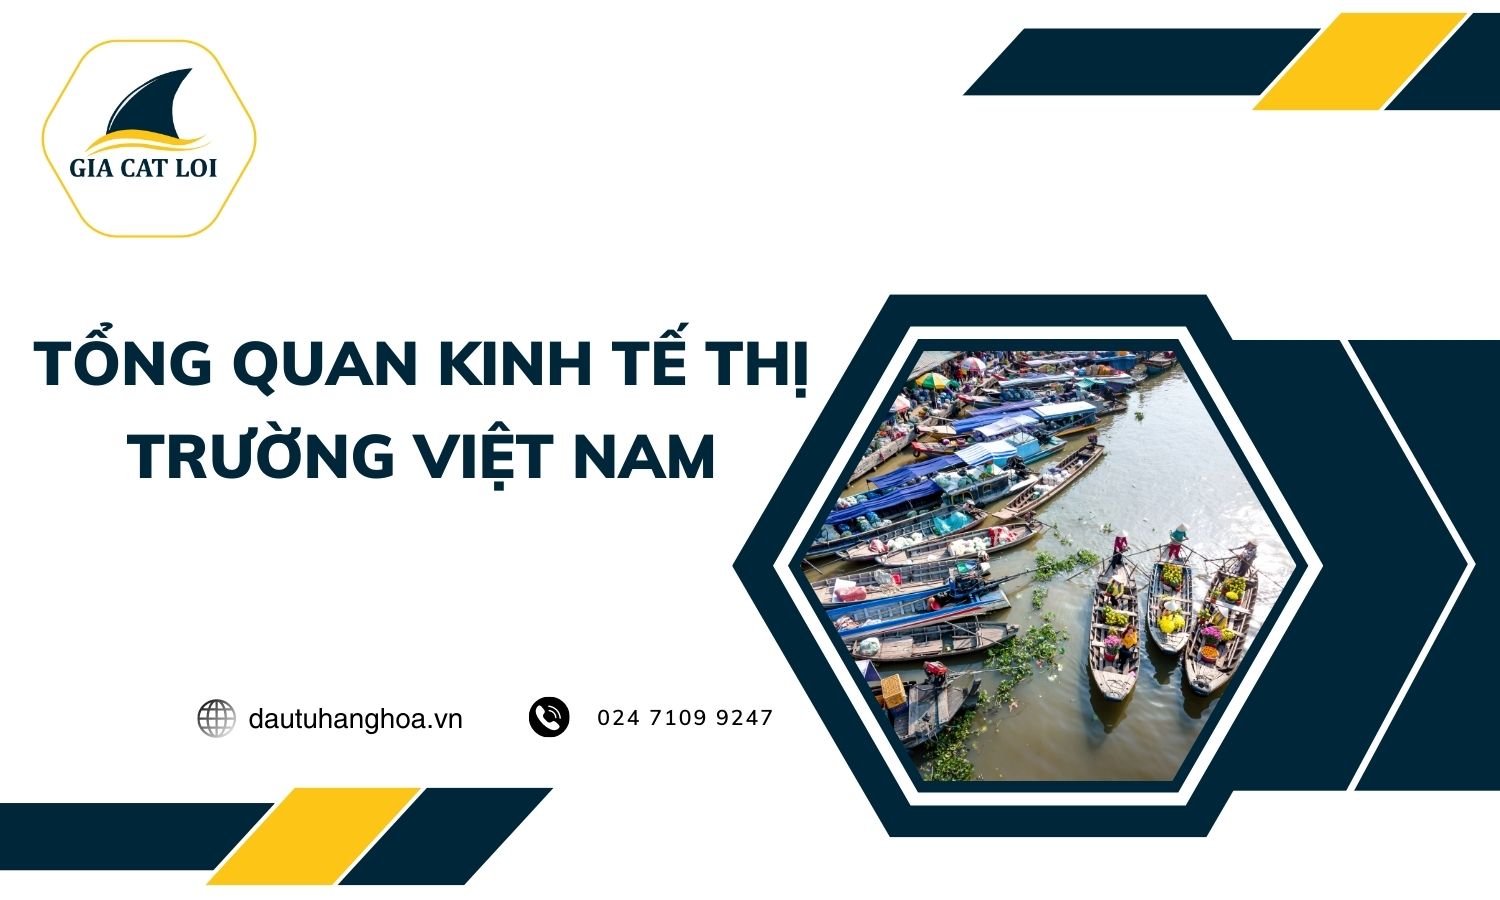 Tổng quan kinh tế thị trường Việt Nam